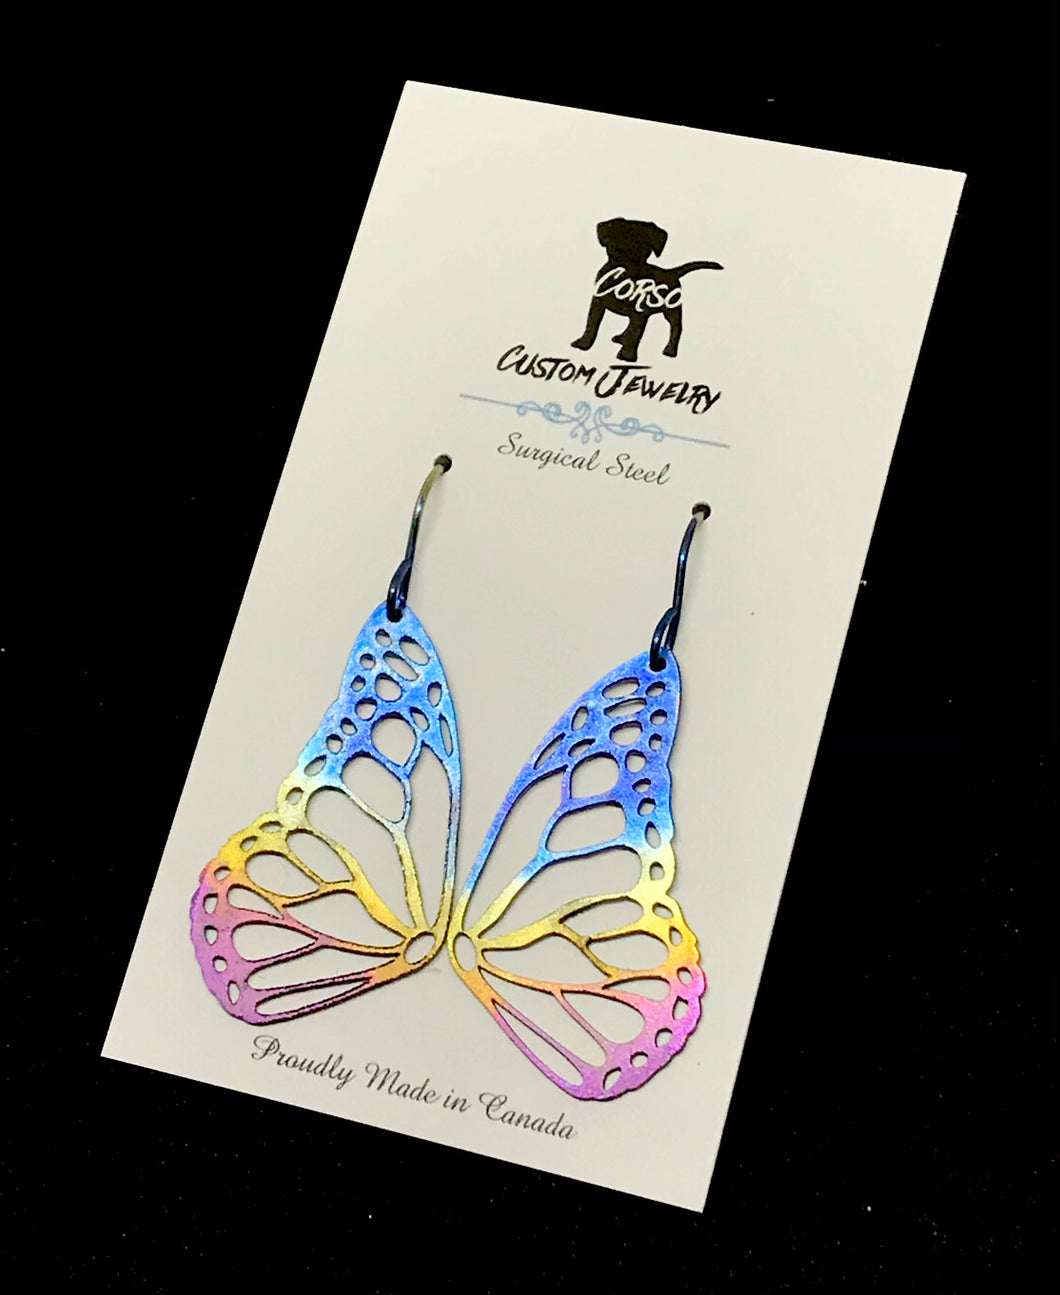 Rainbow Butterfly Wing Drop Earrings